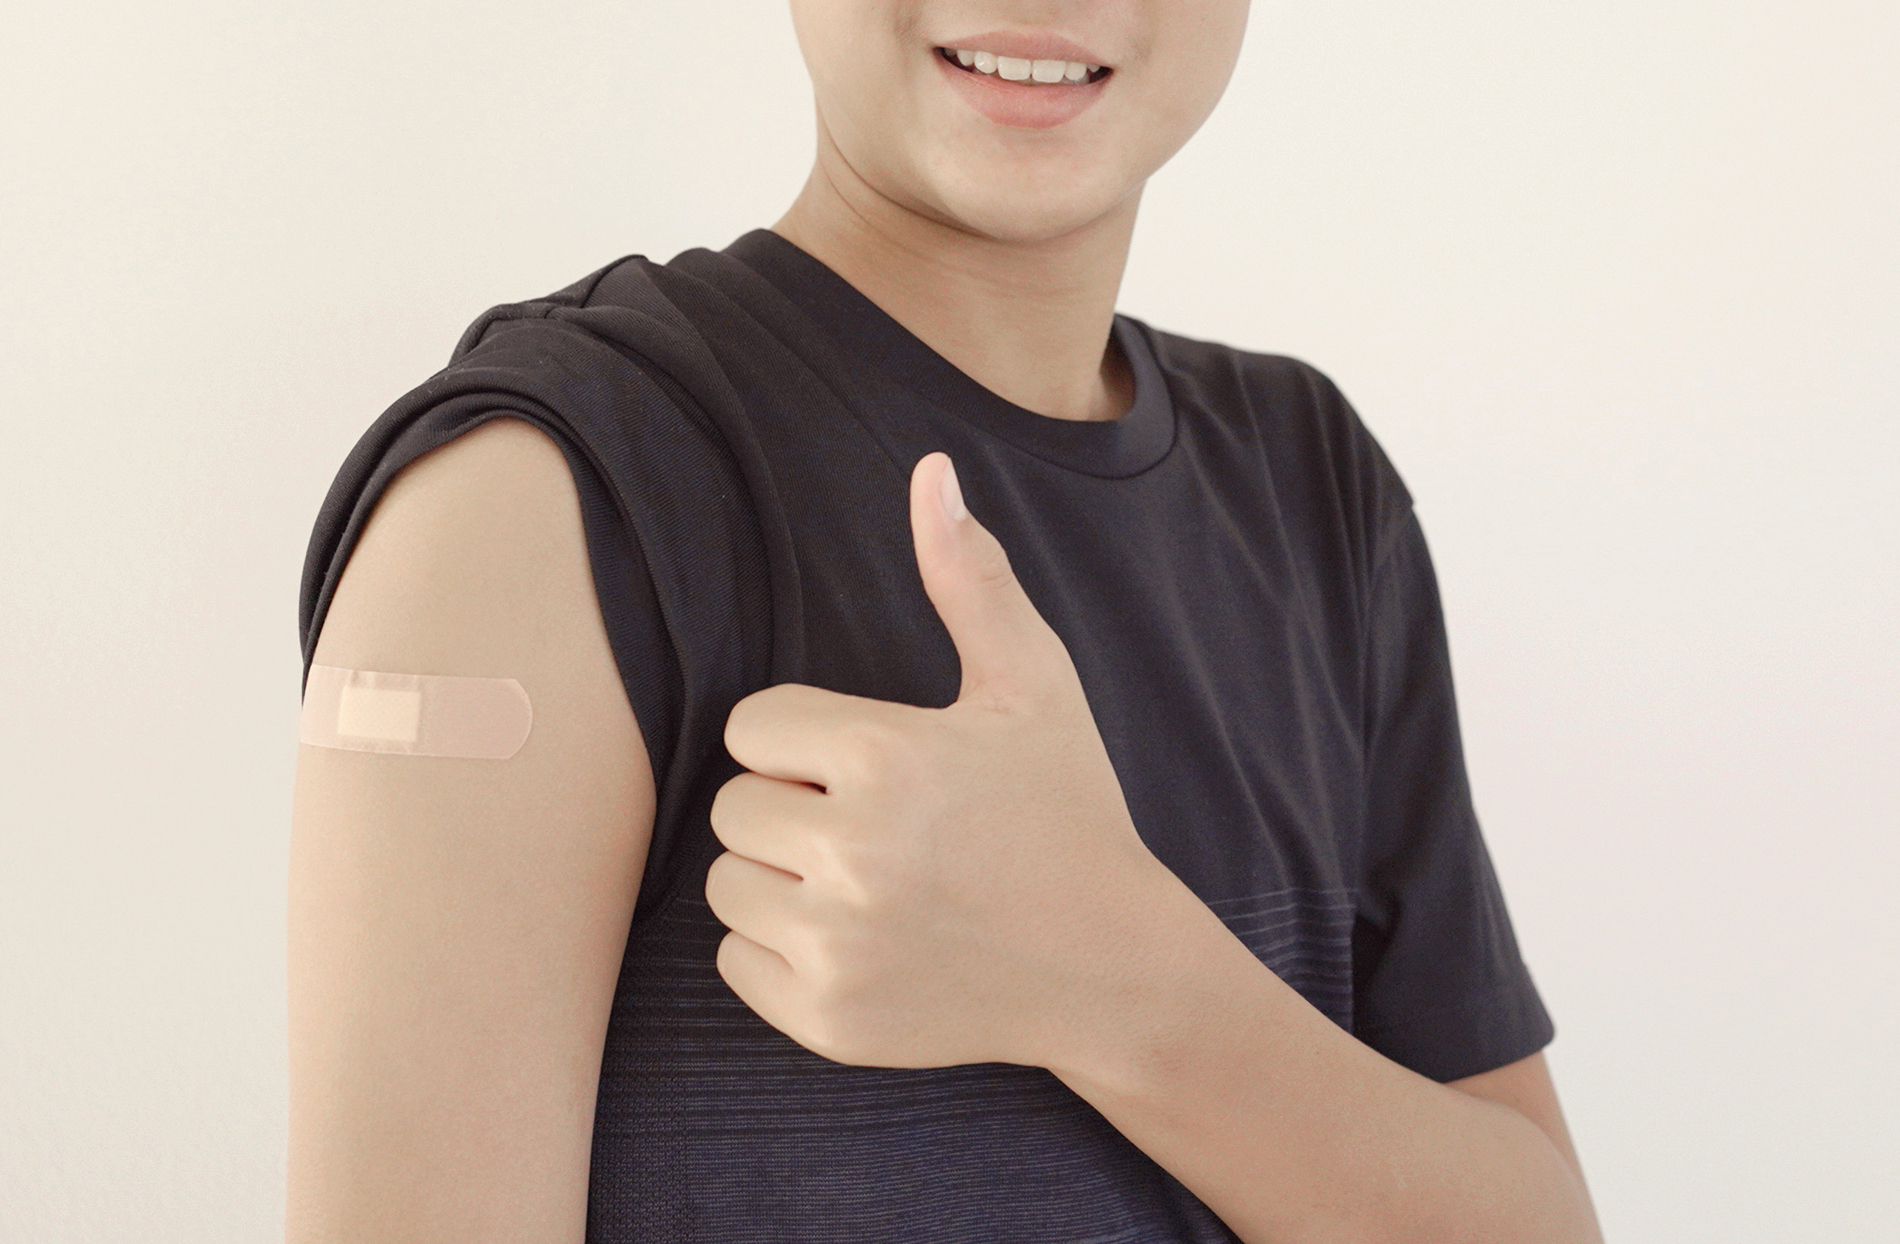 Boy with bandage on shoulder